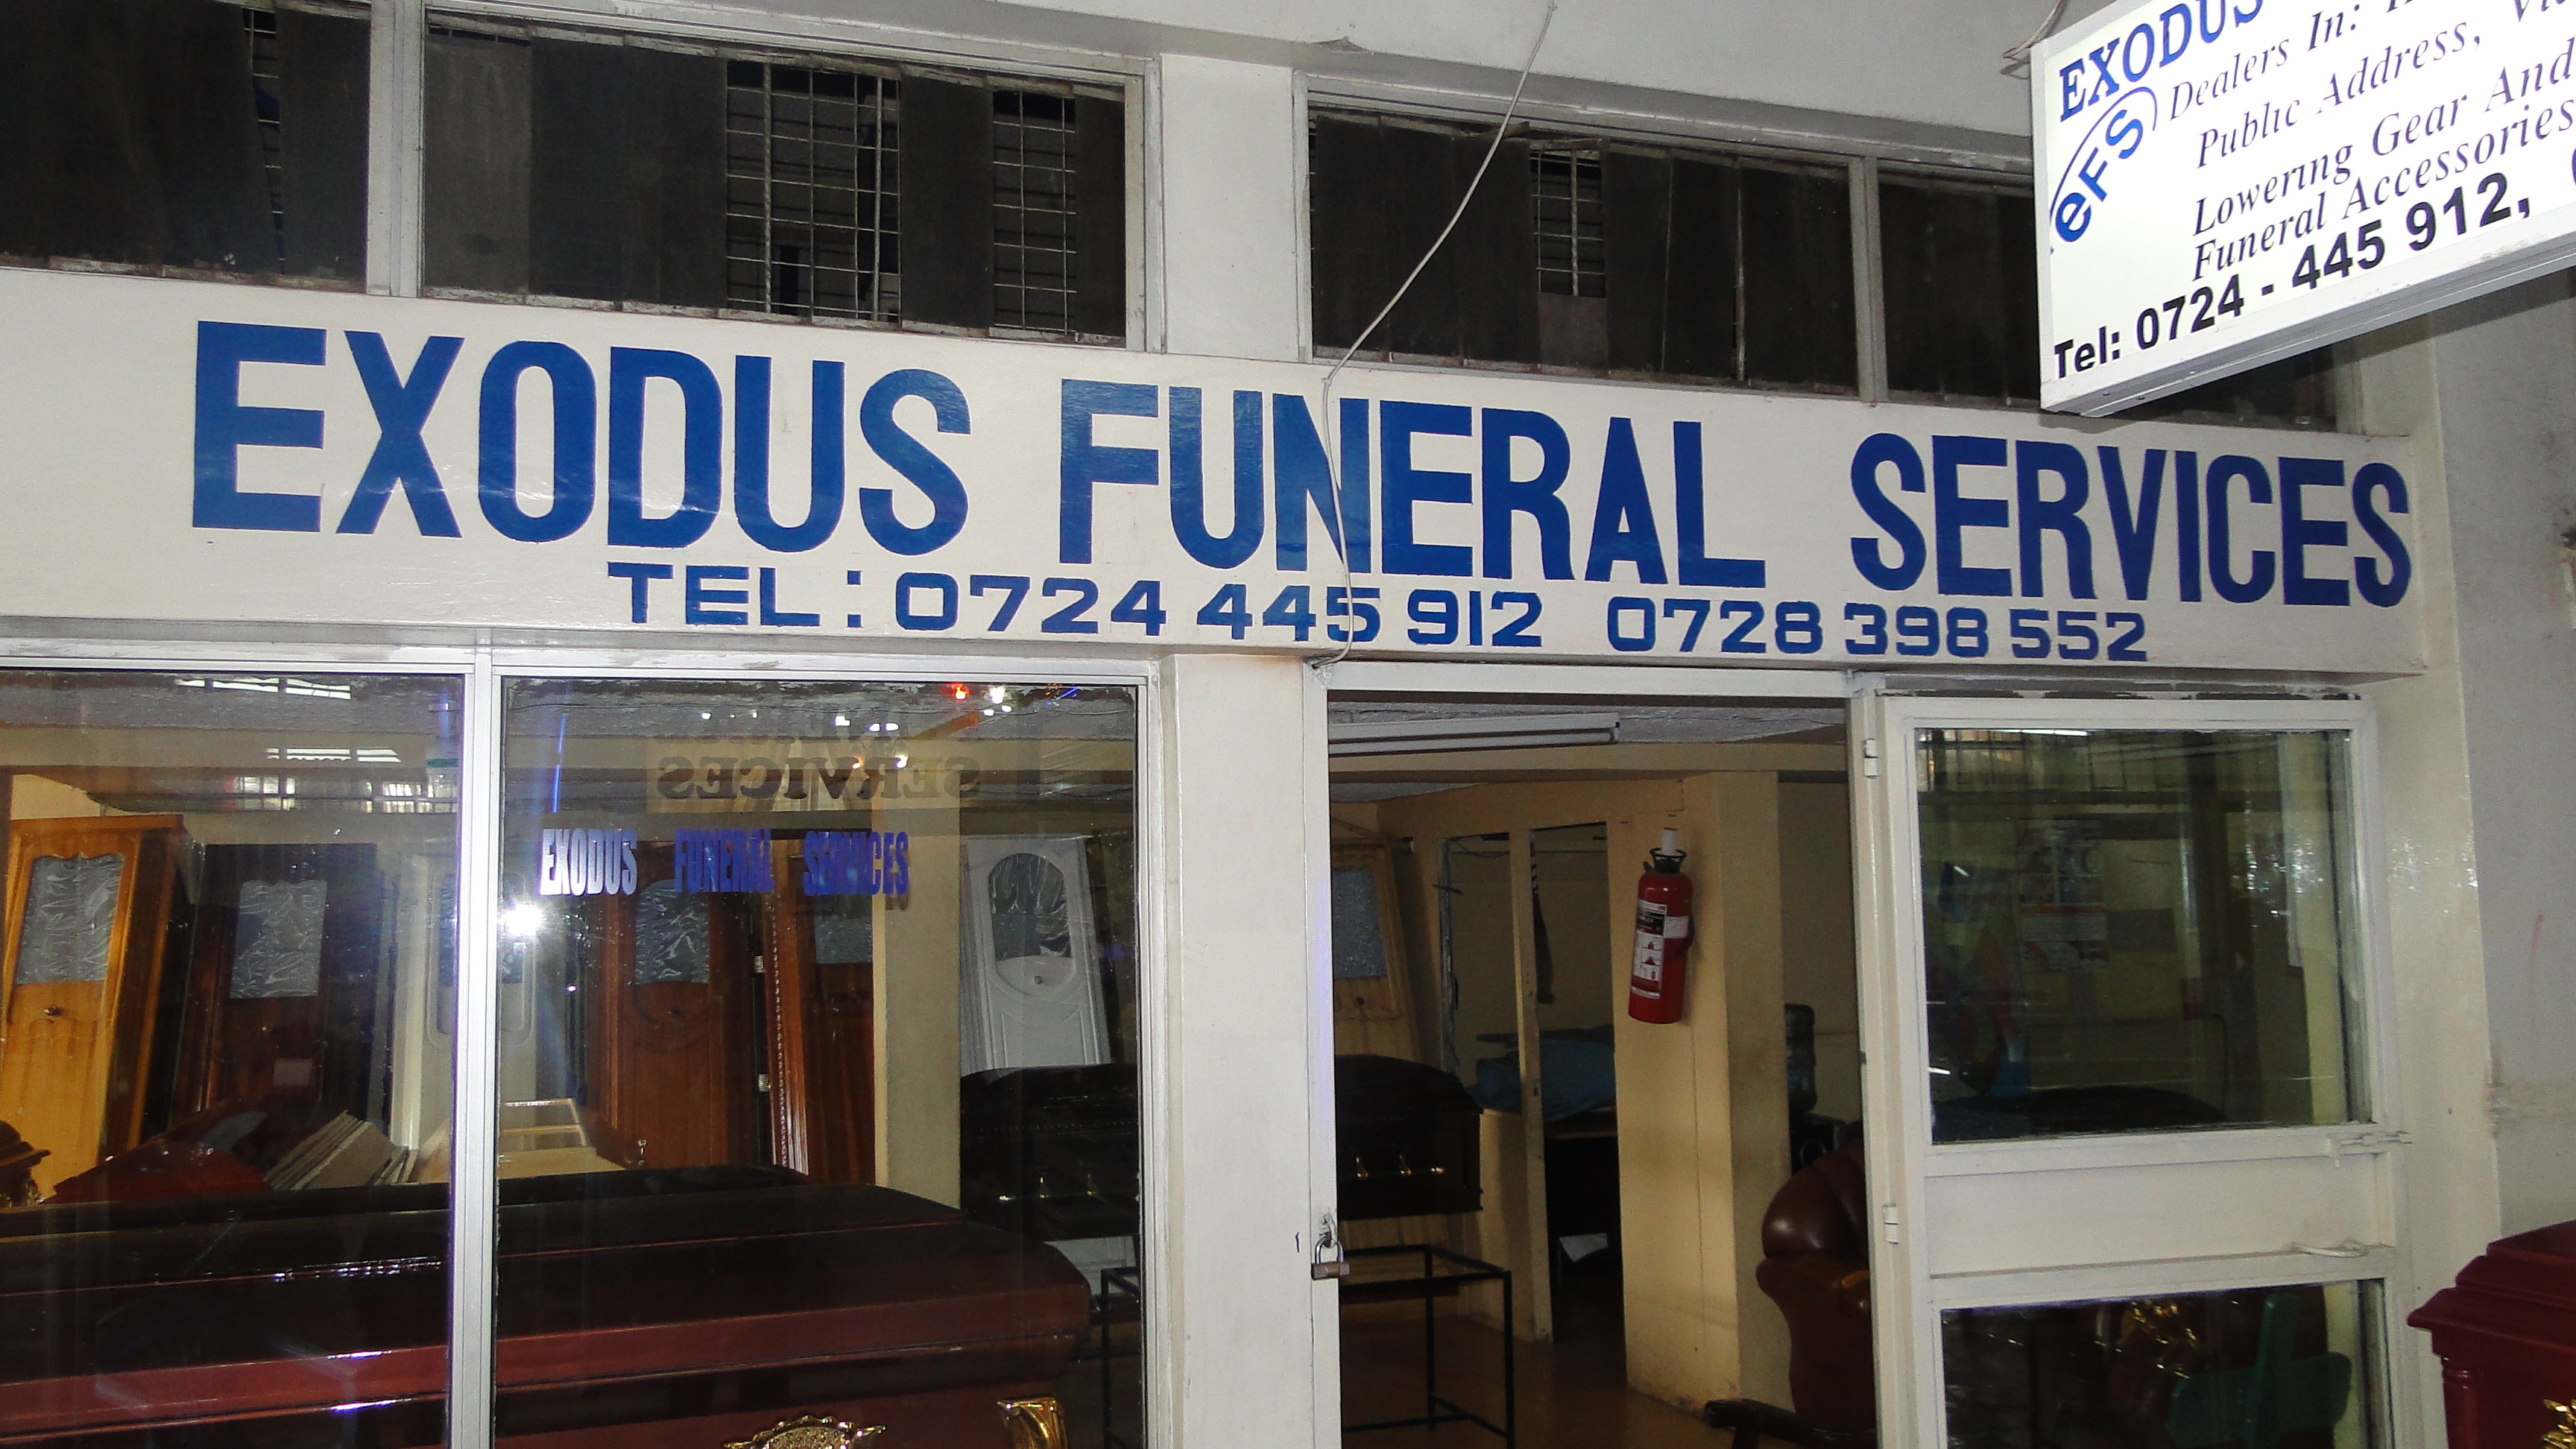 Funeral homes in Kenya – Exodus Funeral Services Kenya3456 x 1944